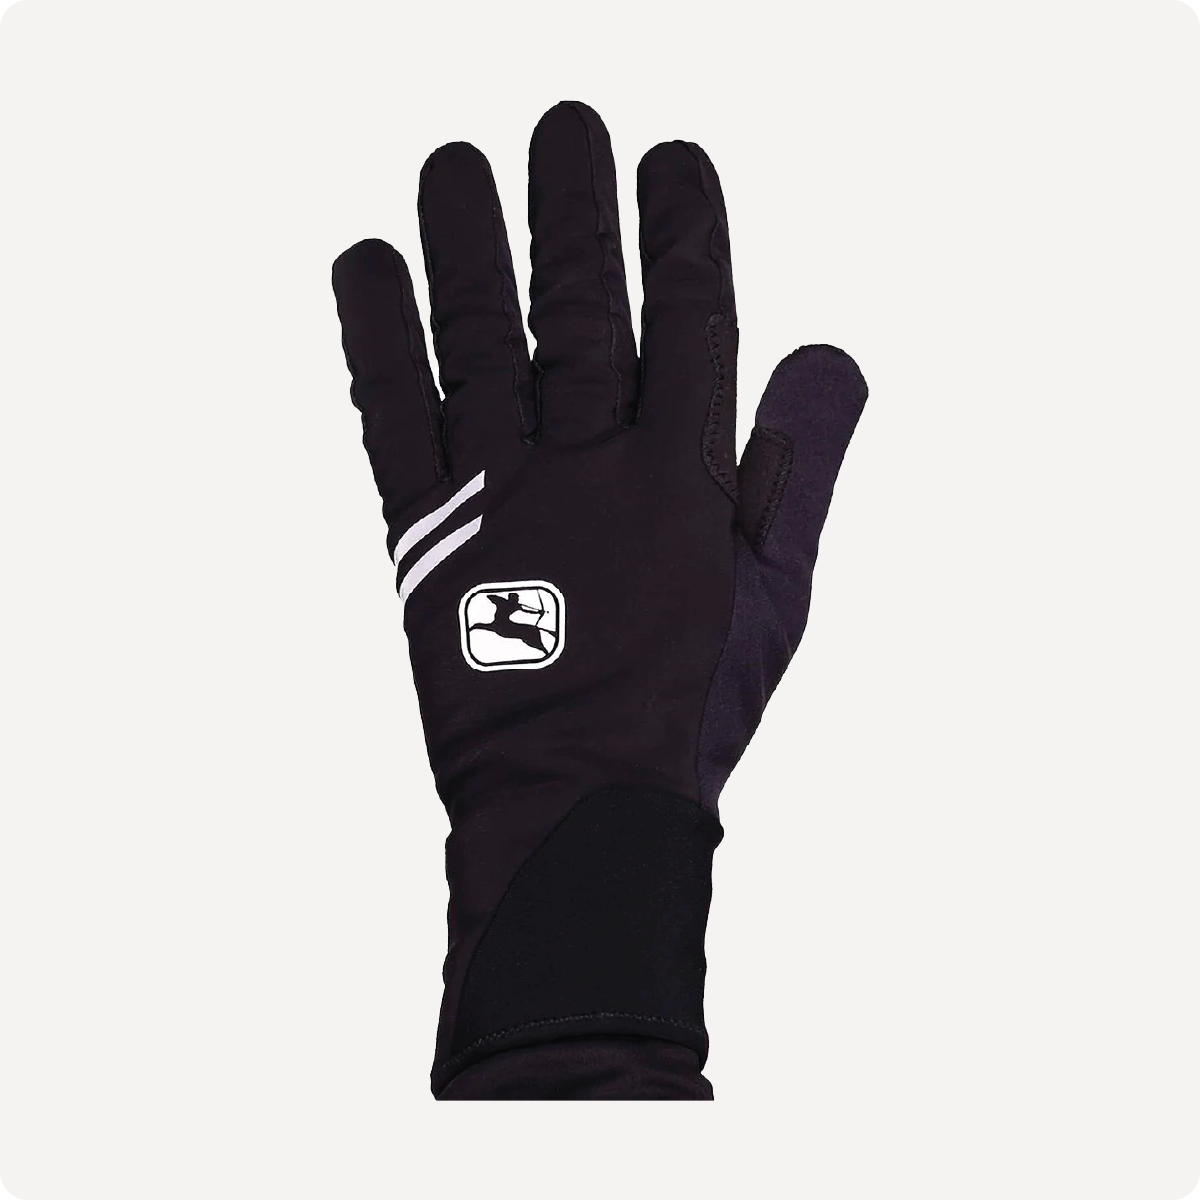 AV 200 Winter Full Finger Gloves